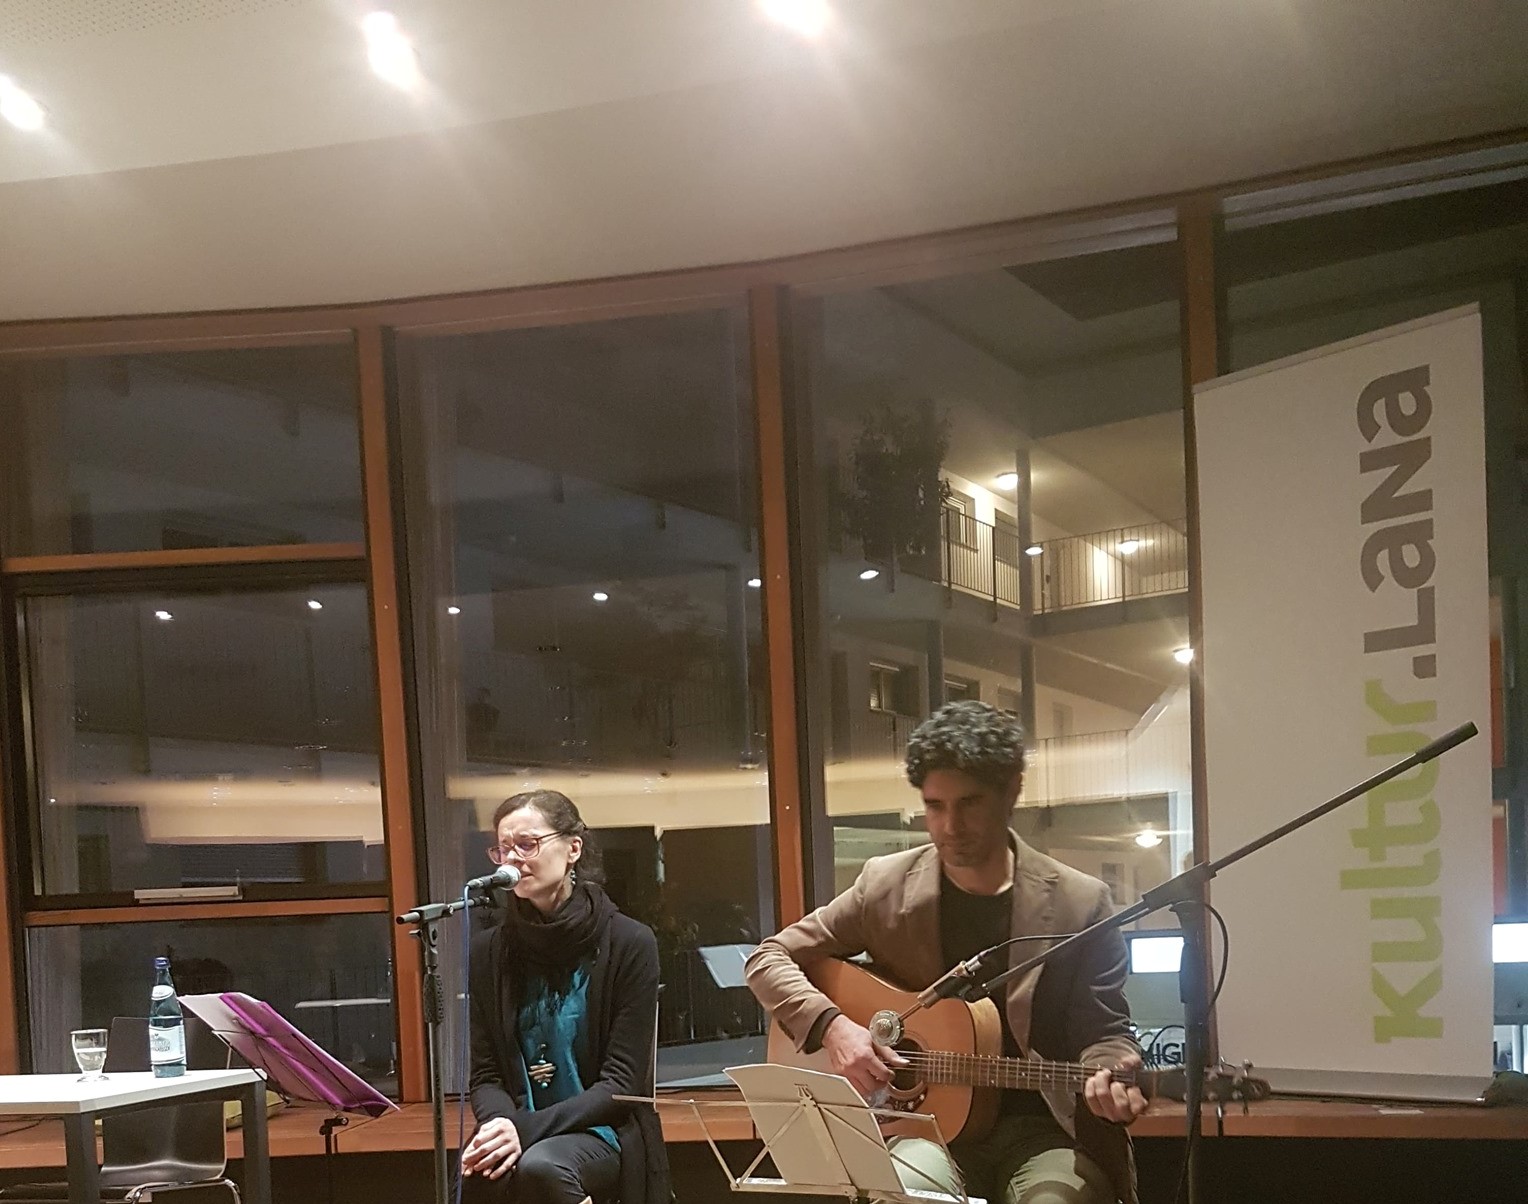 Poesie und Engagement, in ihren Songs verbinden sich zwei der wichtigsten Elemente der Musik: Pedron und Muscolino 2019 bei einer Veranstaltung in Lana.